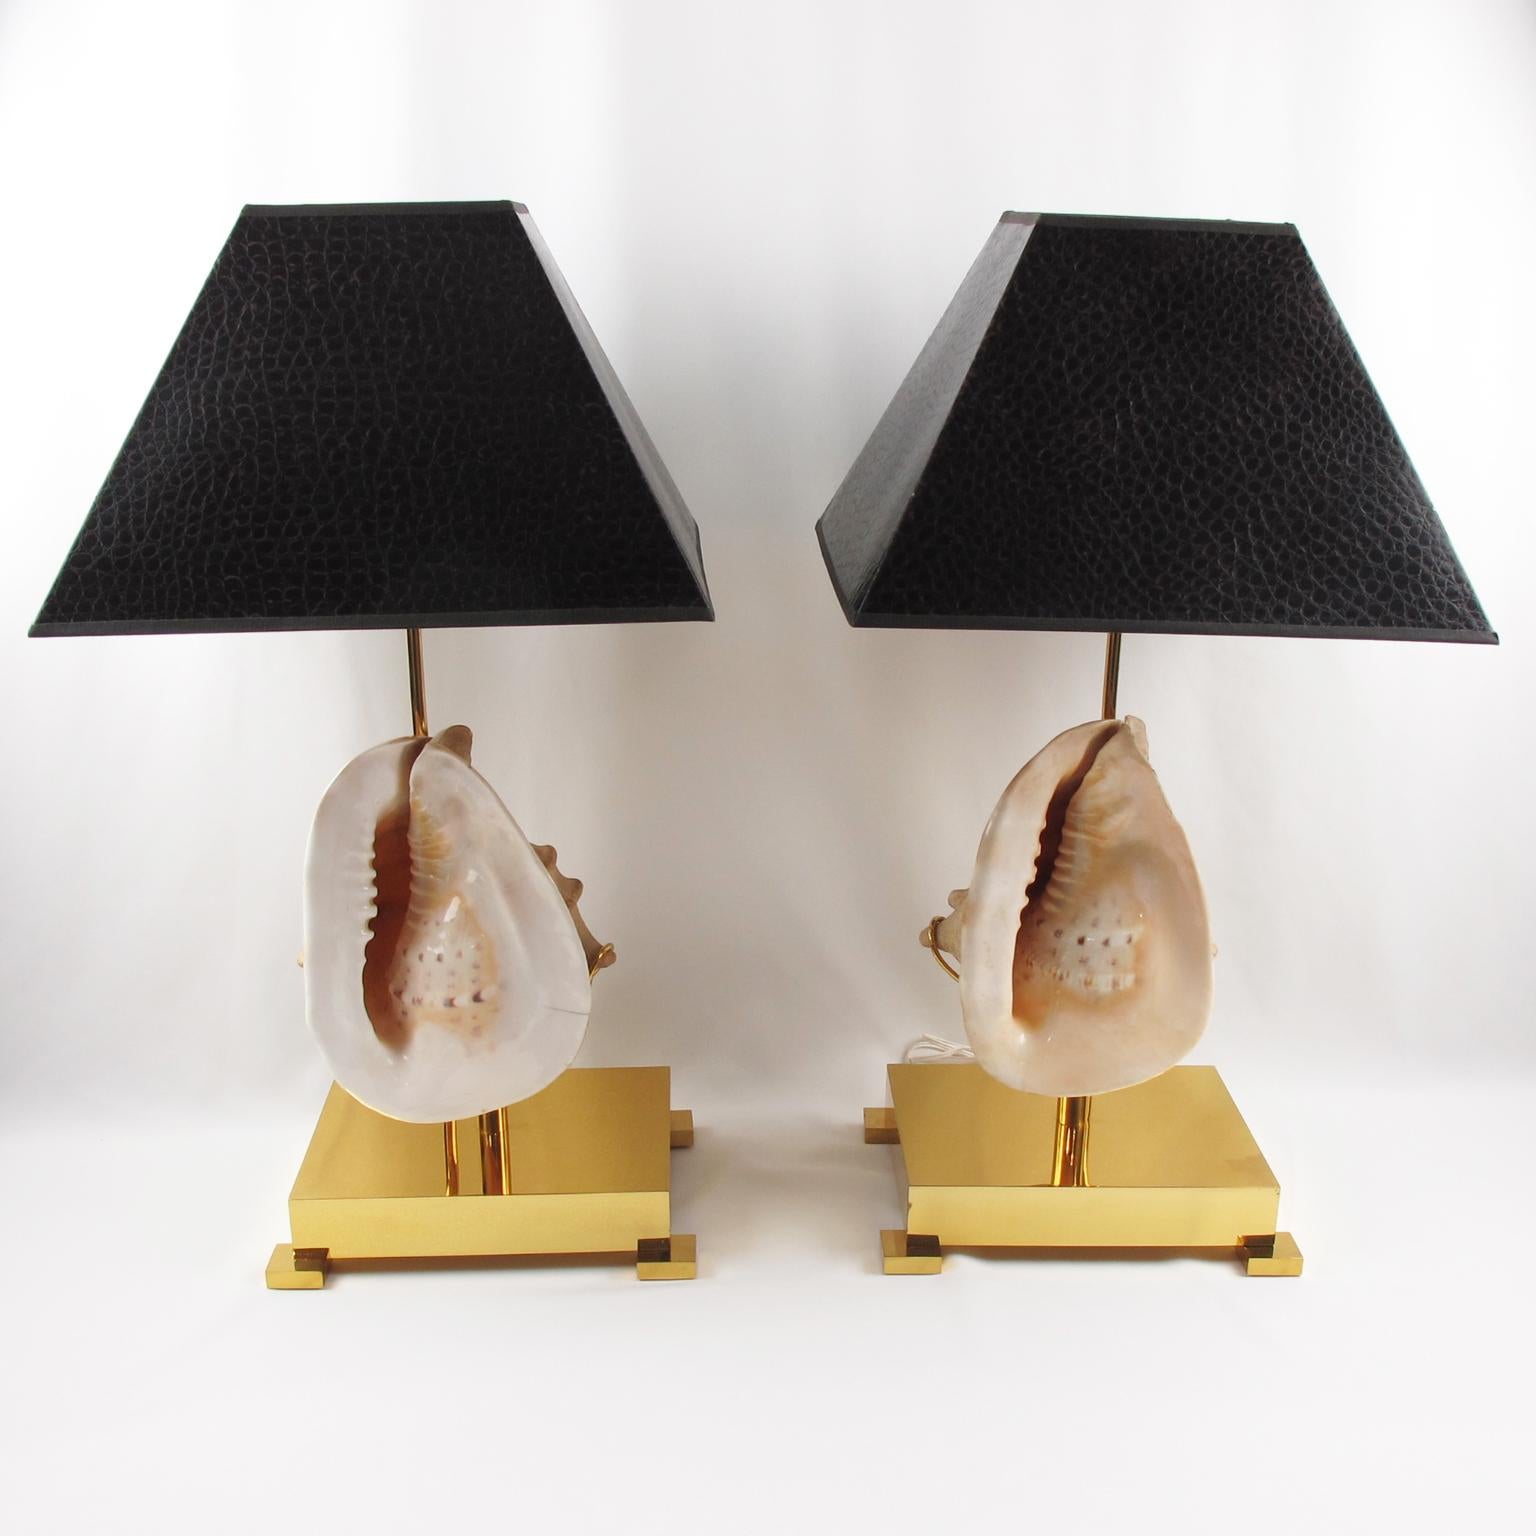 Willy Daros a conçu ces étonnantes lampes de table dans les années 1970. Ces lampes sont ornées de coquillages surdimensionnés montés sur une base carrée en laiton poli. 
Les abat-jours sont de forme géométrique et de couleur brun foncé avec un